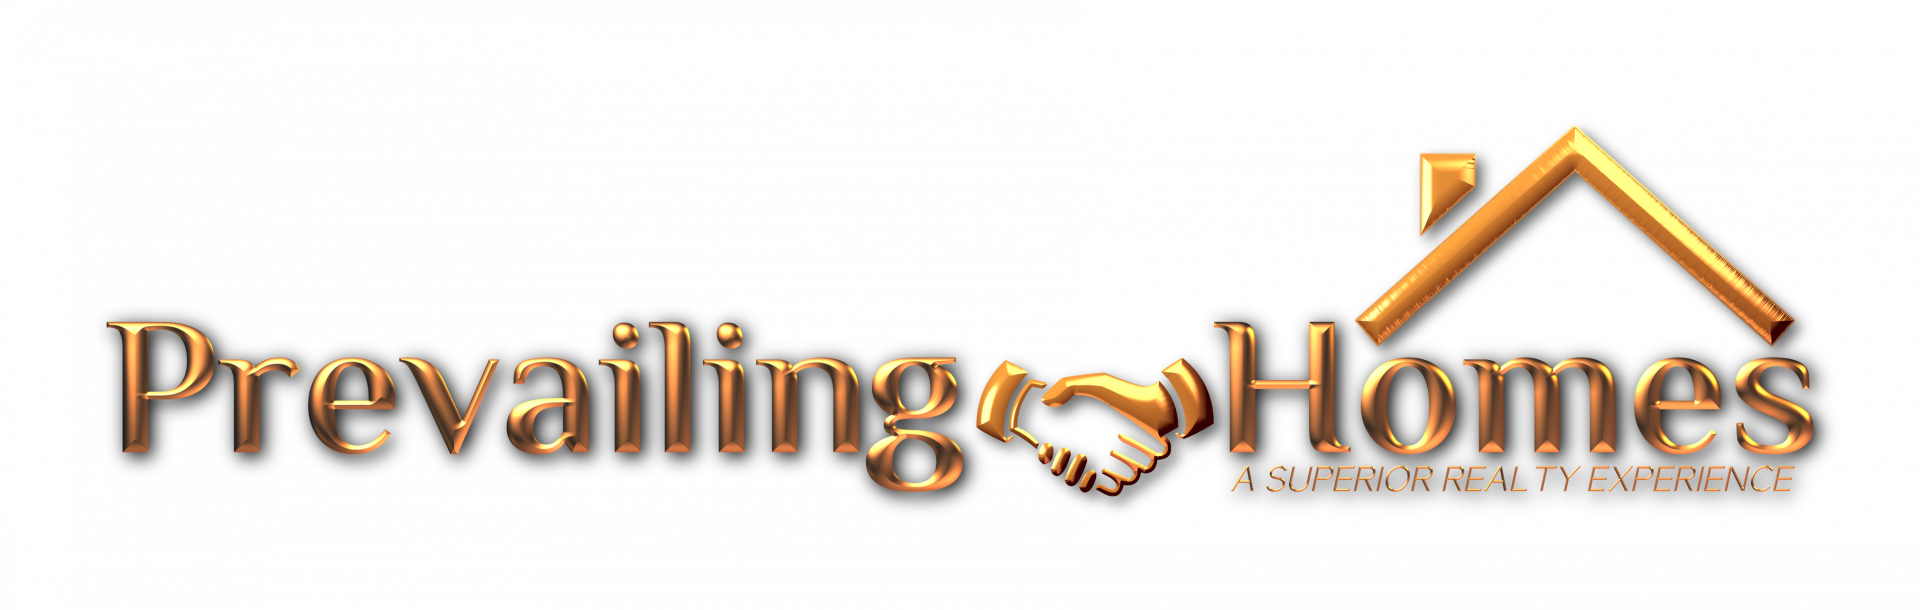 Prevailing Homes LLC  logo